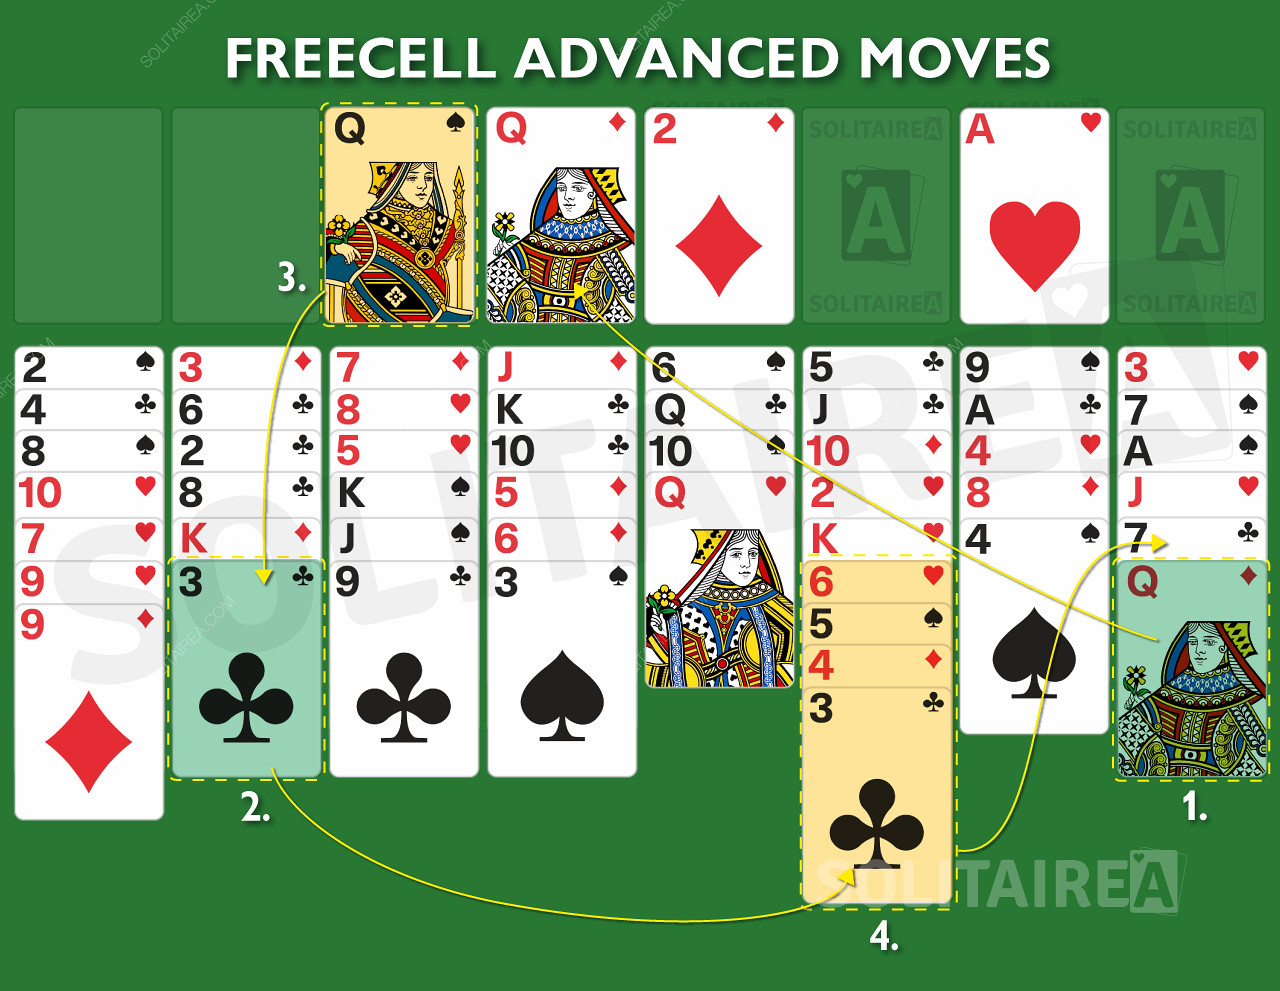 Geavanceerde bewegingen en strategie voor dit kaartspel